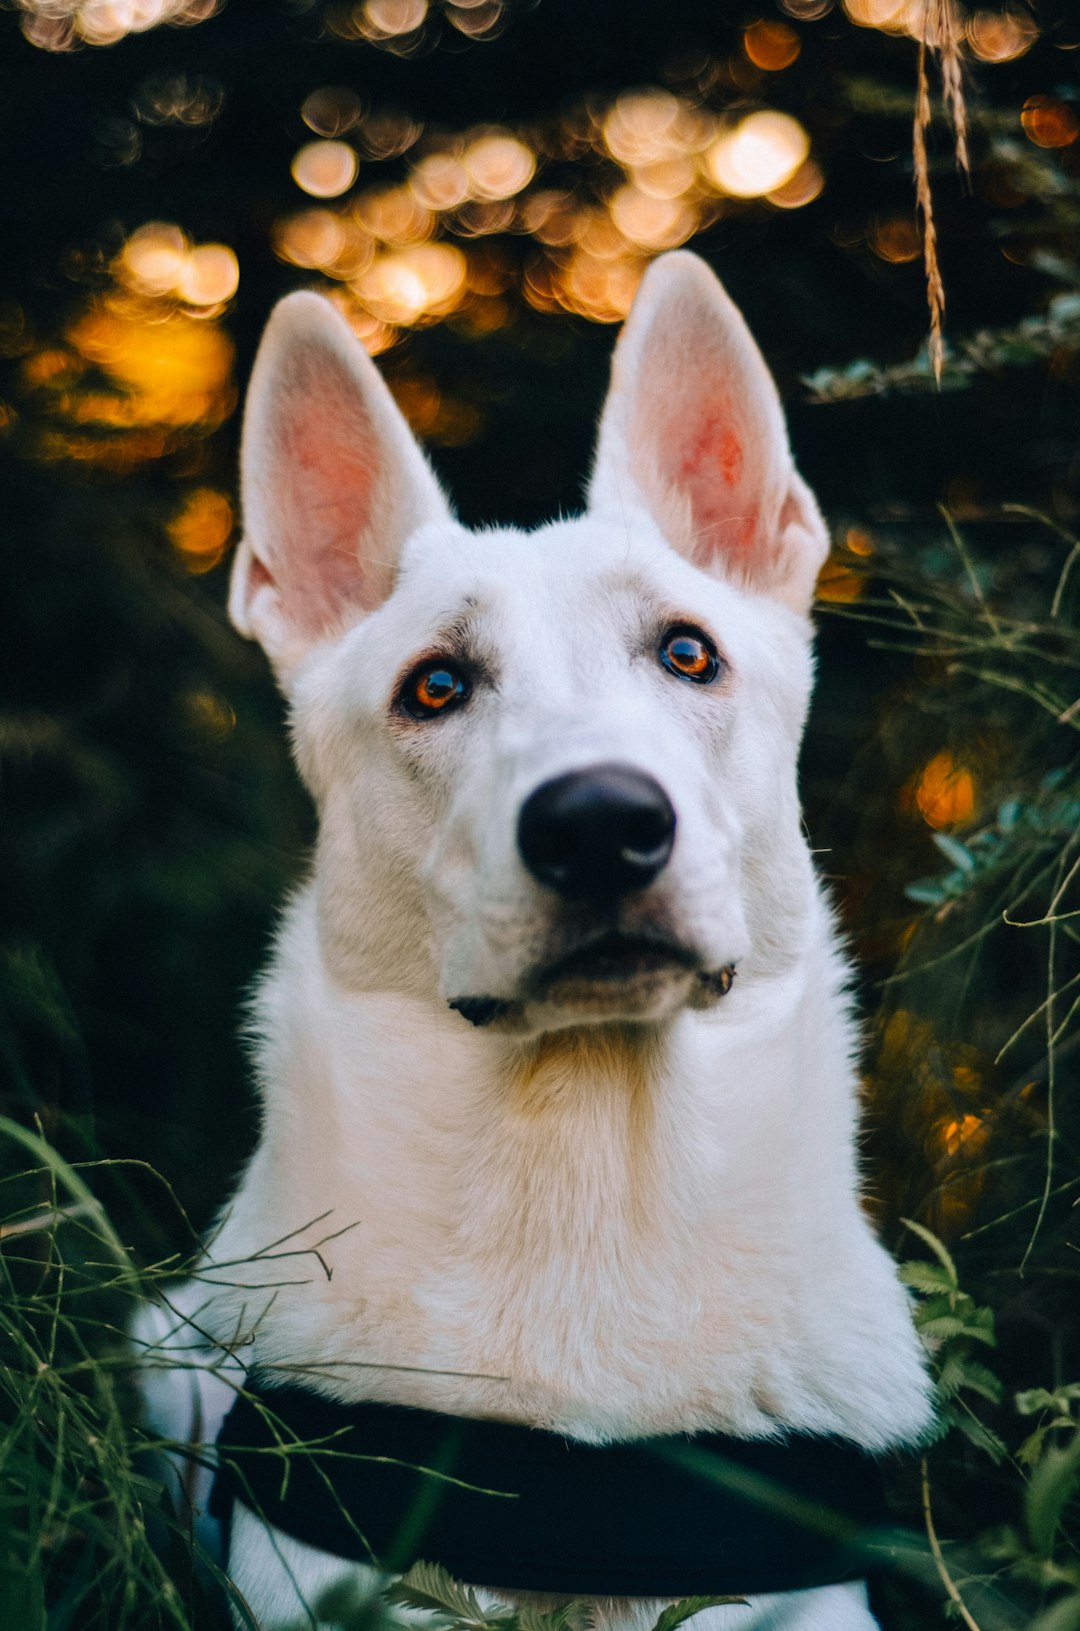 white short coated dog with yellow eyes